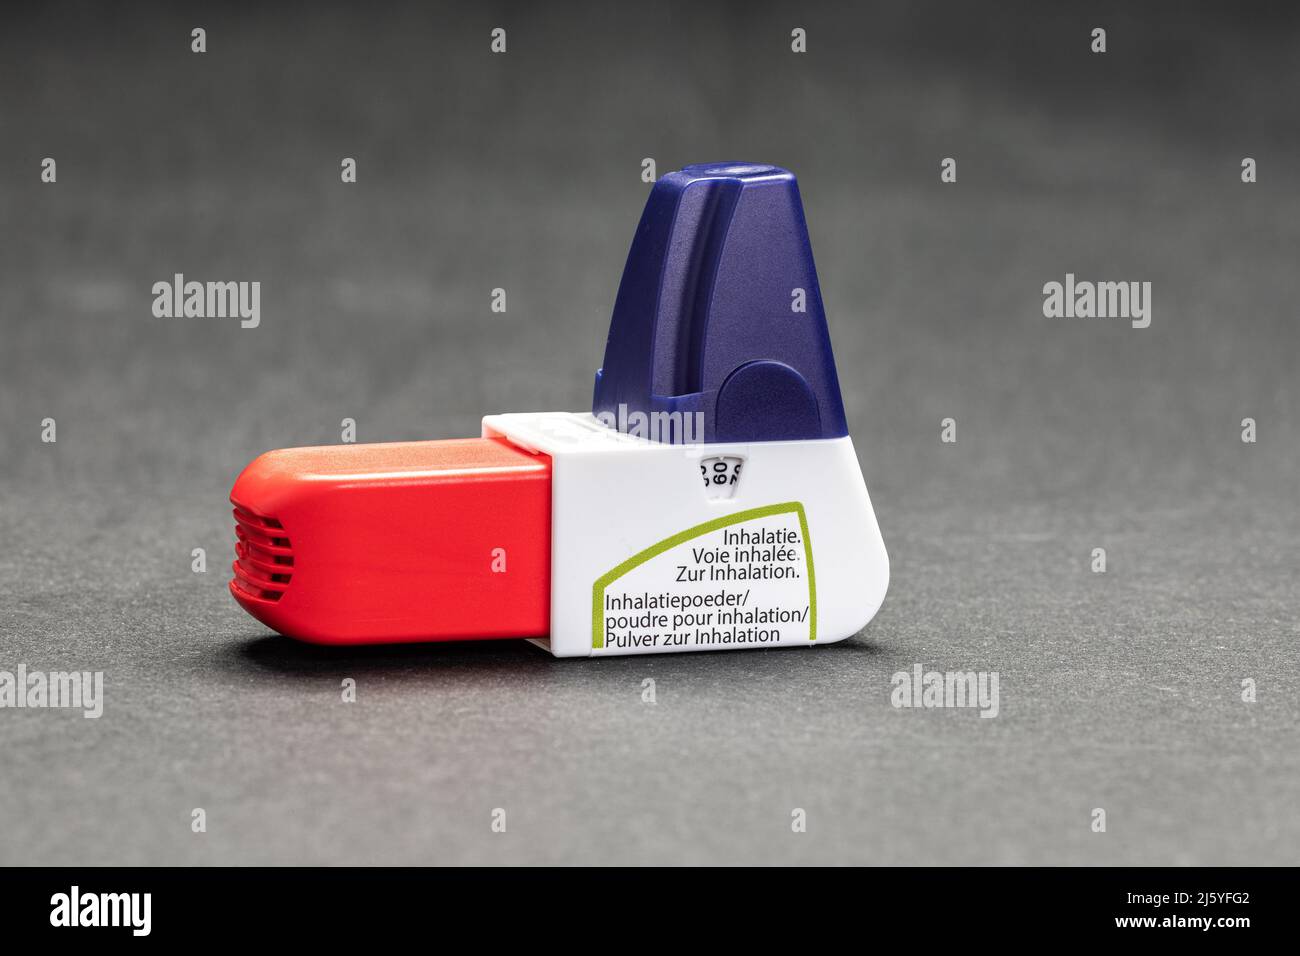 Asthma spray immagini e fotografie stock ad alta risoluzione - Alamy